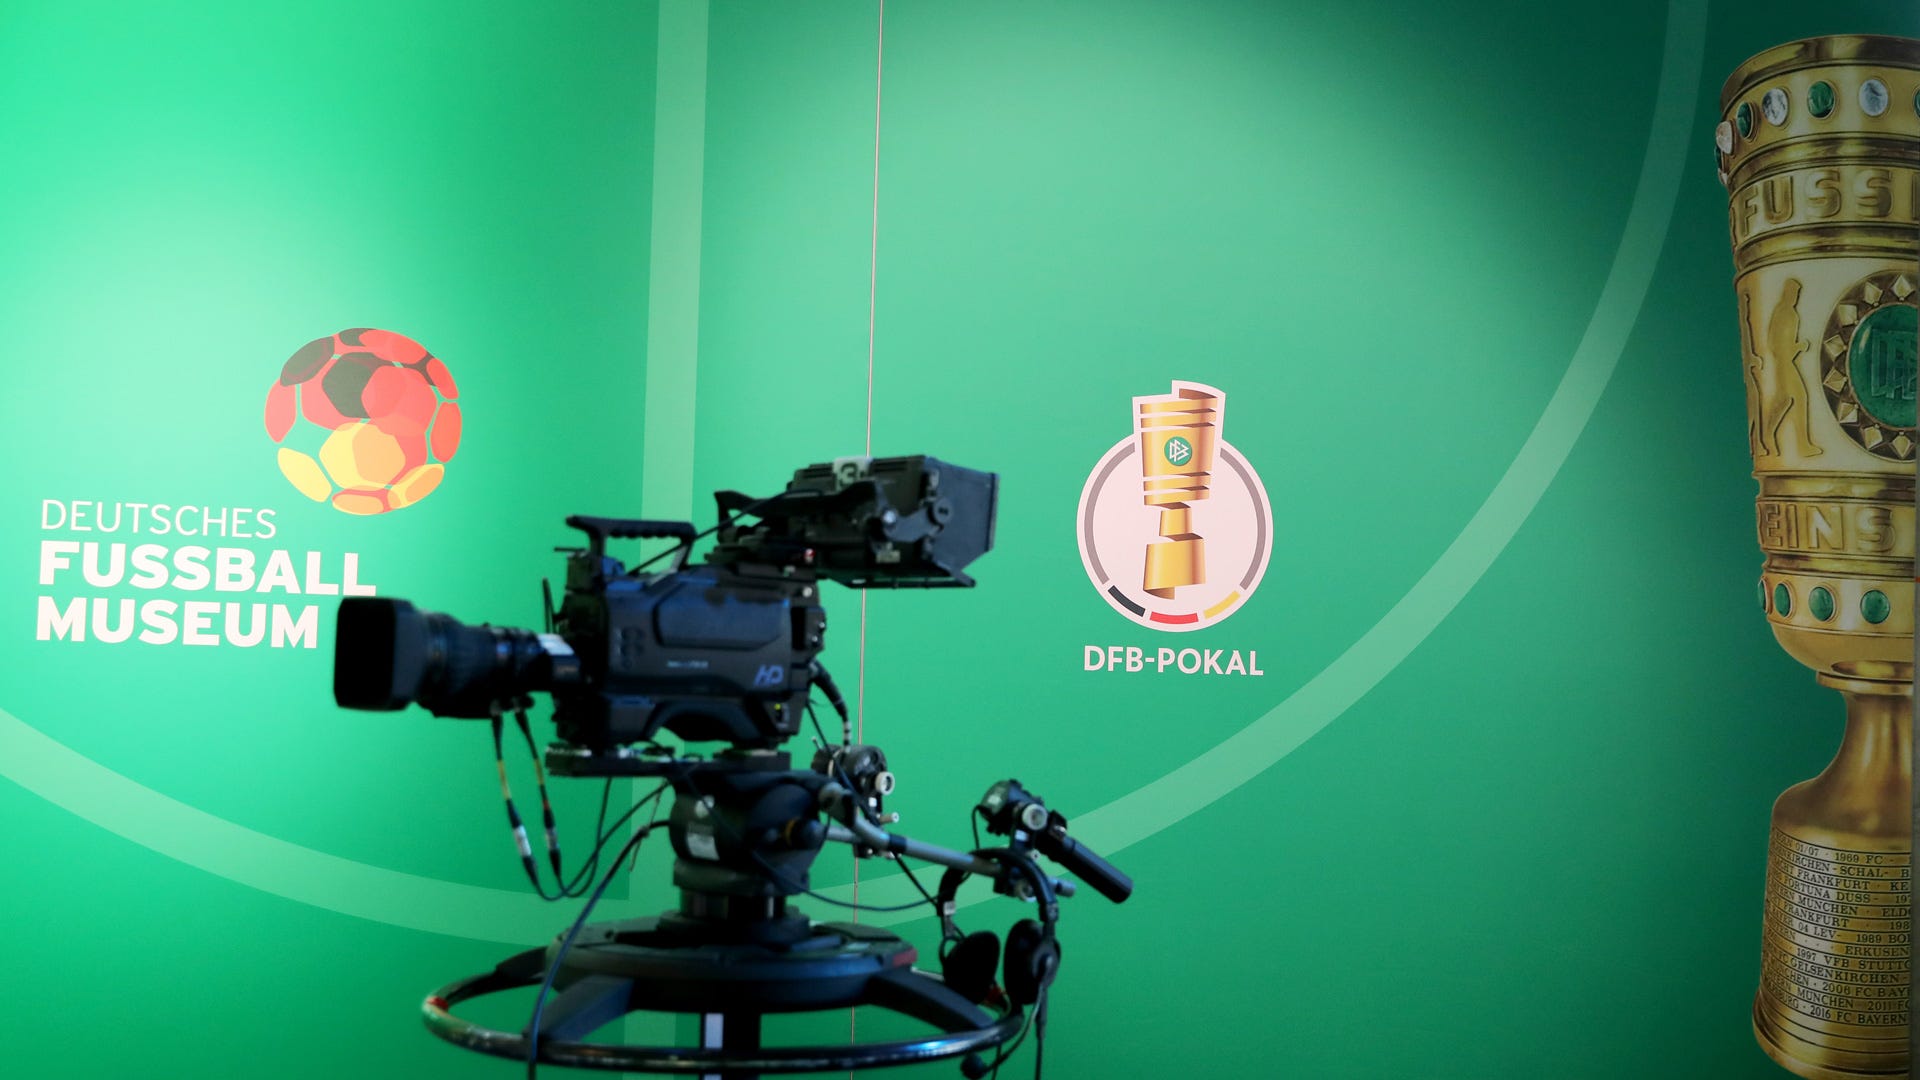 DFB-Pokal heute live Wer zeigt / überträgt die Spiele am Samstag? Goal Deutschland